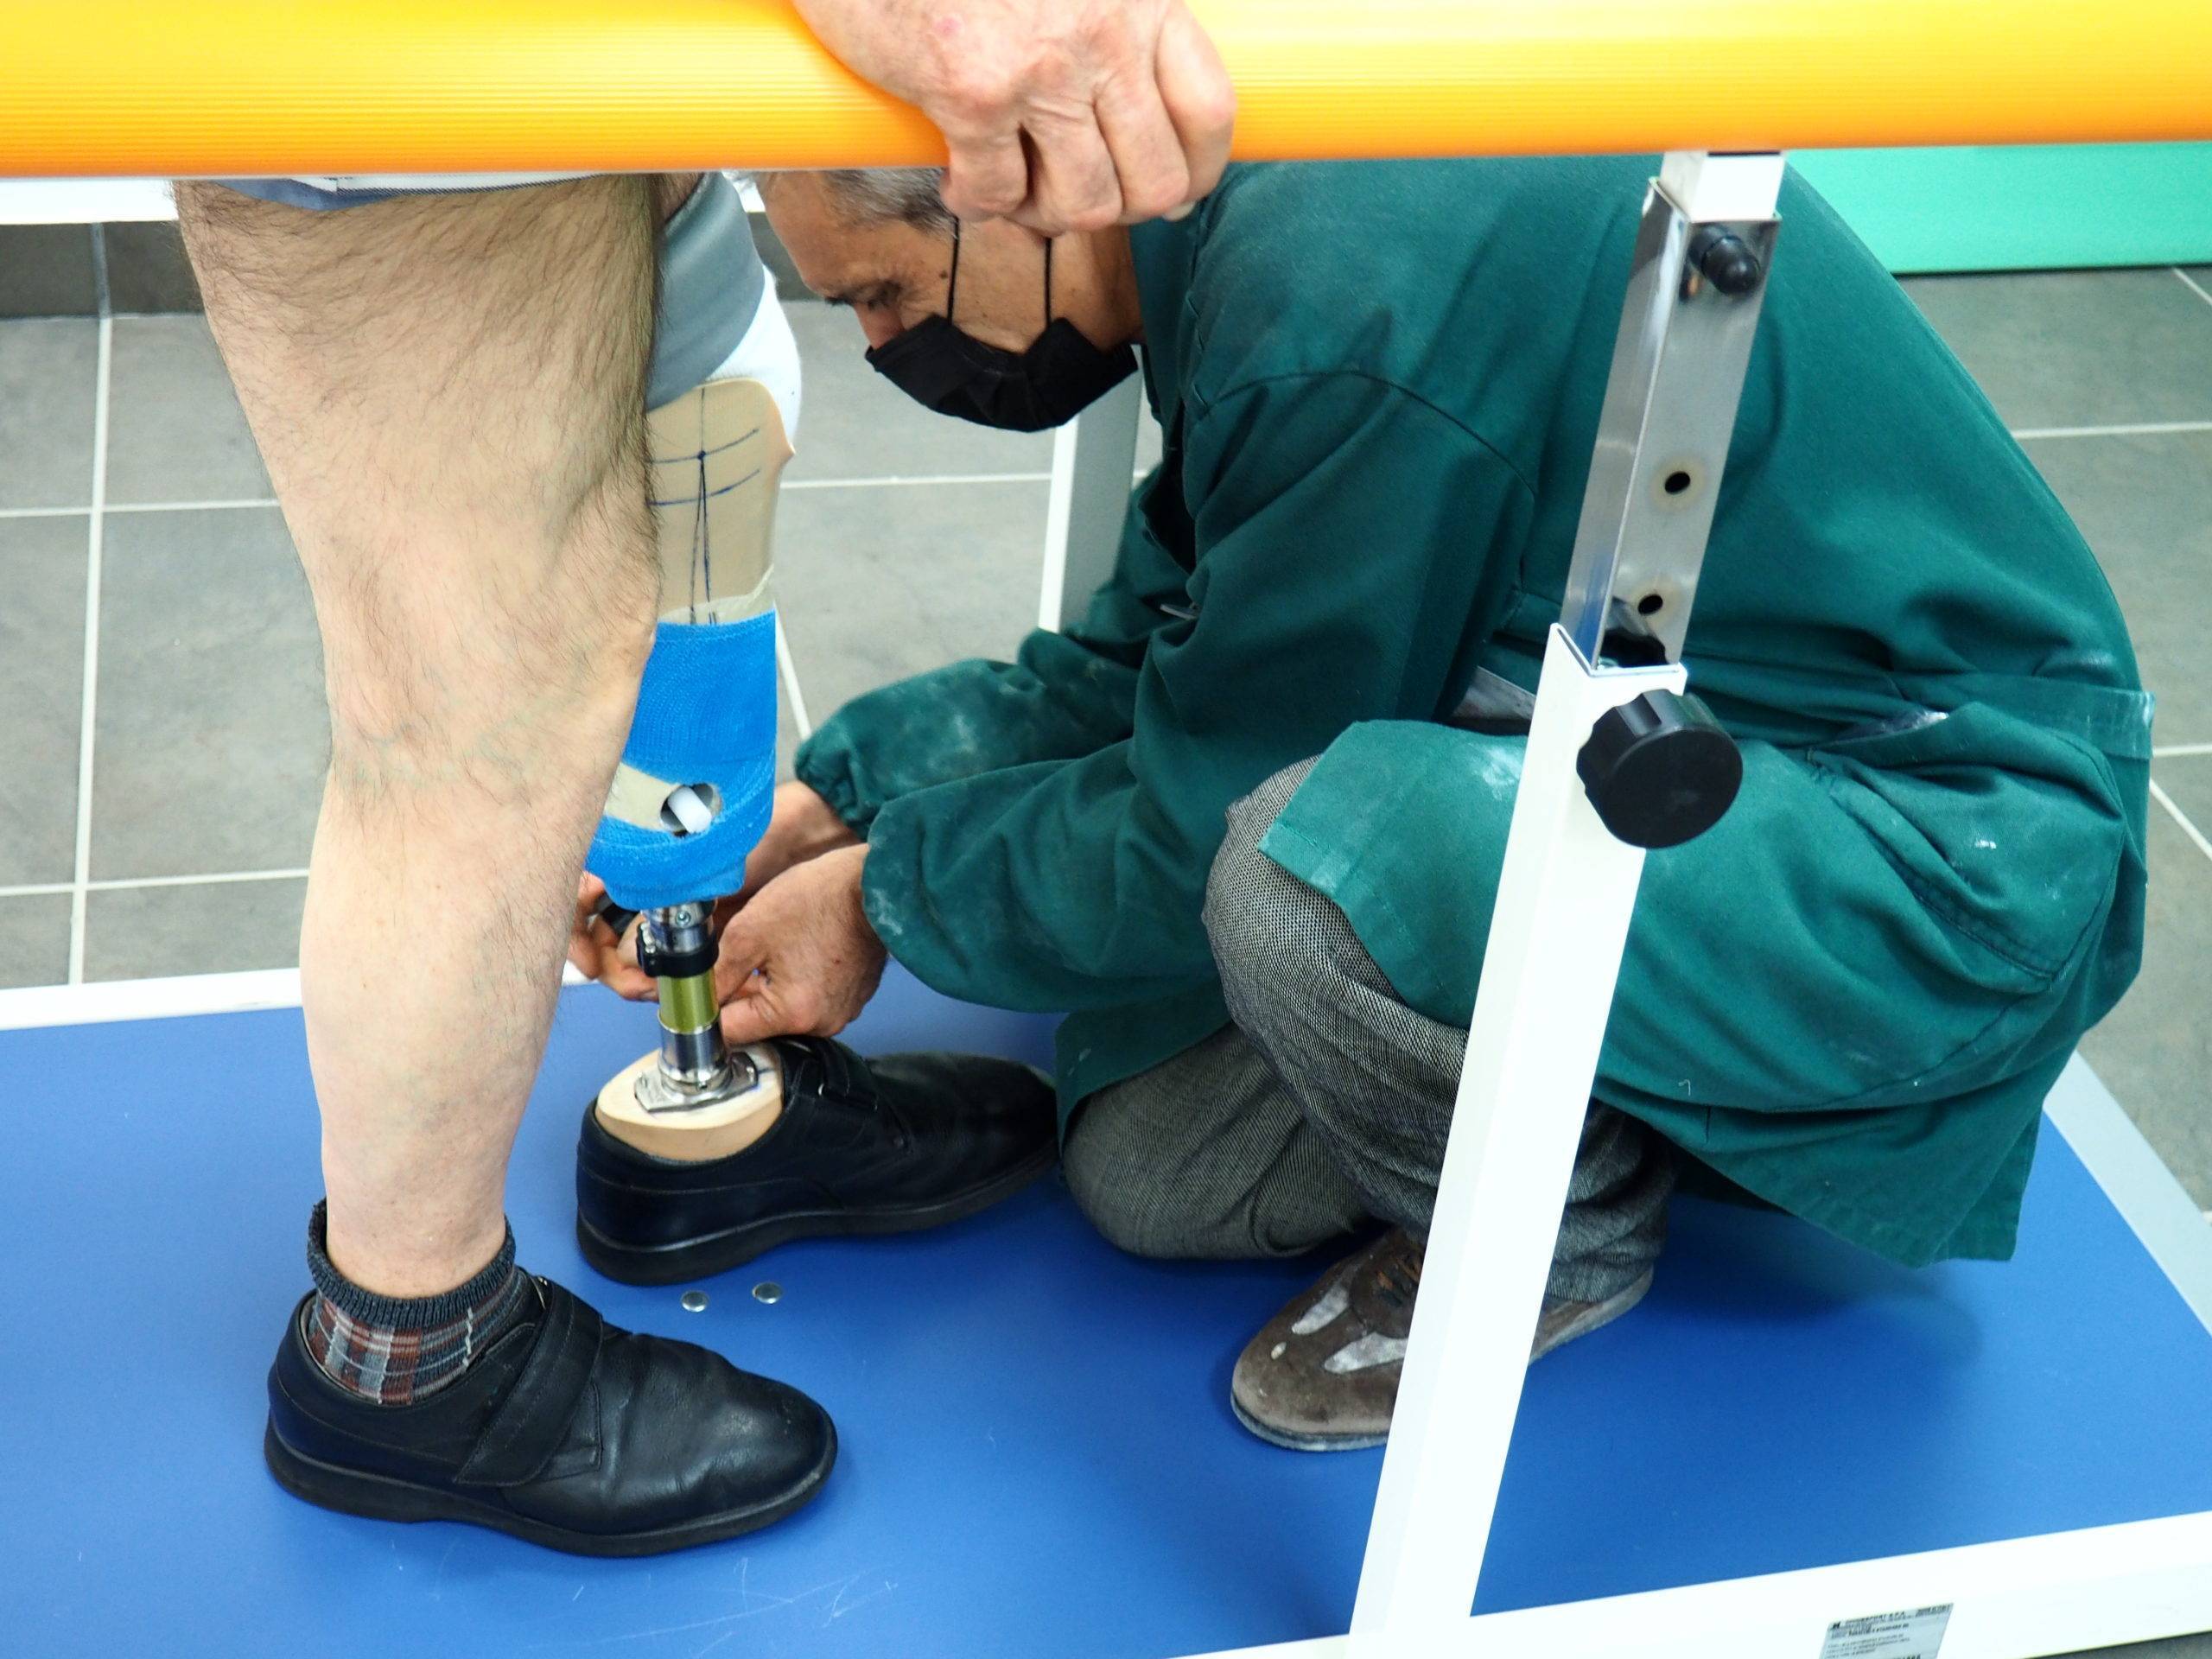 OTR Ortopedia - Prova e Consegna Protesi Arto Inferiore